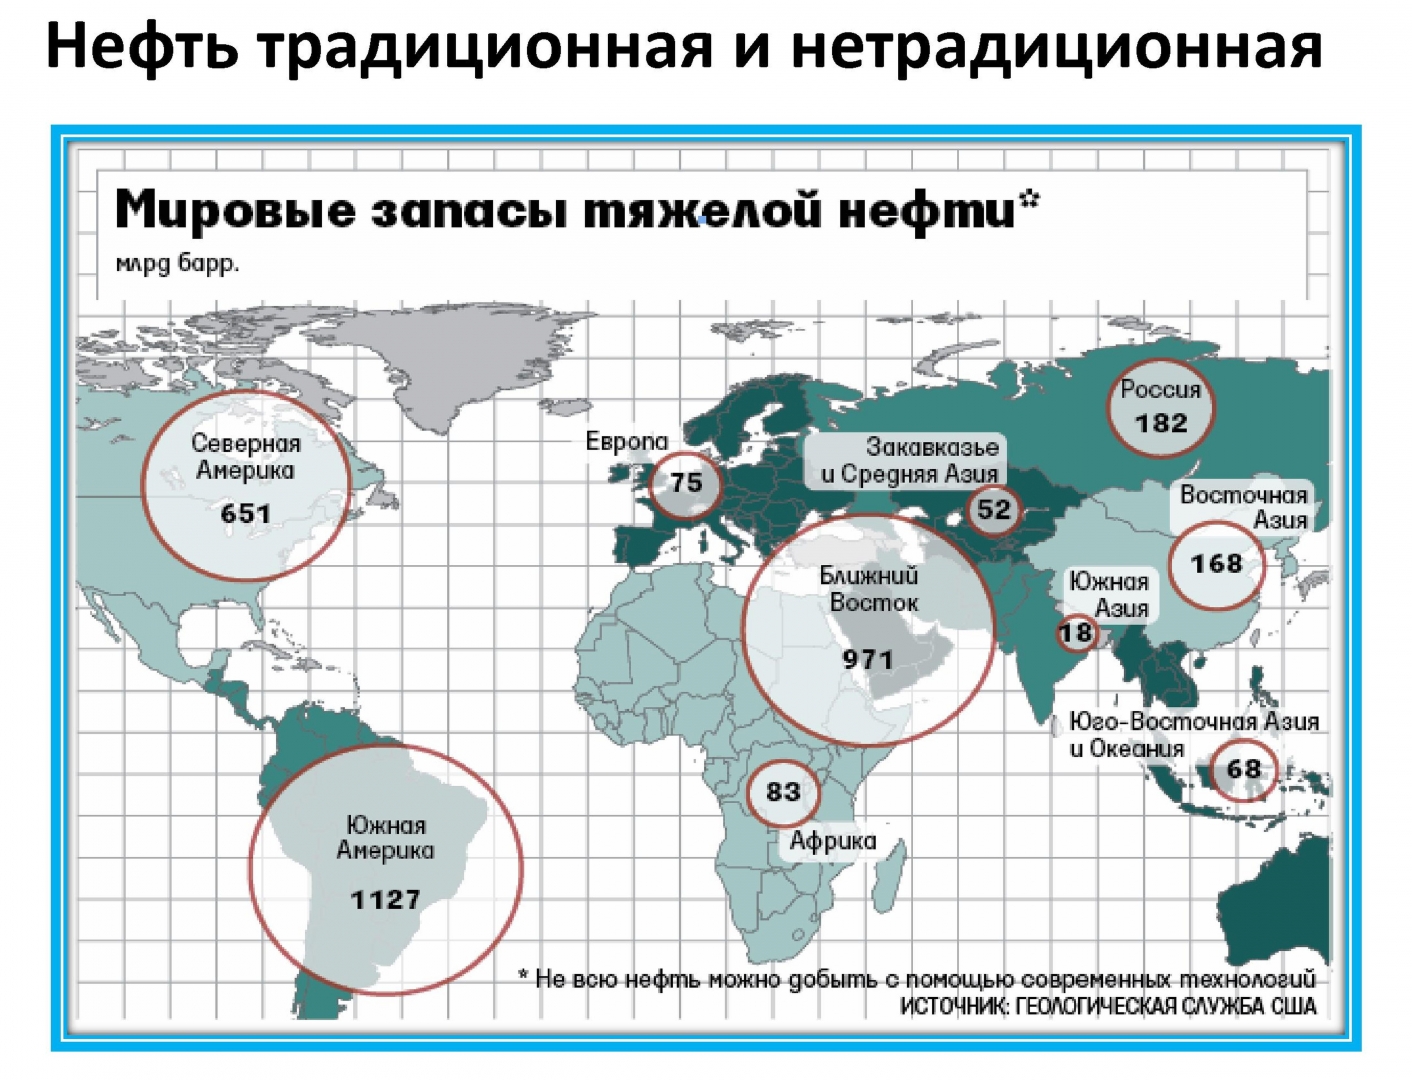 Запасы газа россии место в мире. Карта запасов нефти и газа в мире. Распределение запасов битума и “тяжелой” нефти по странам. Залежи нефти в мире на карте.